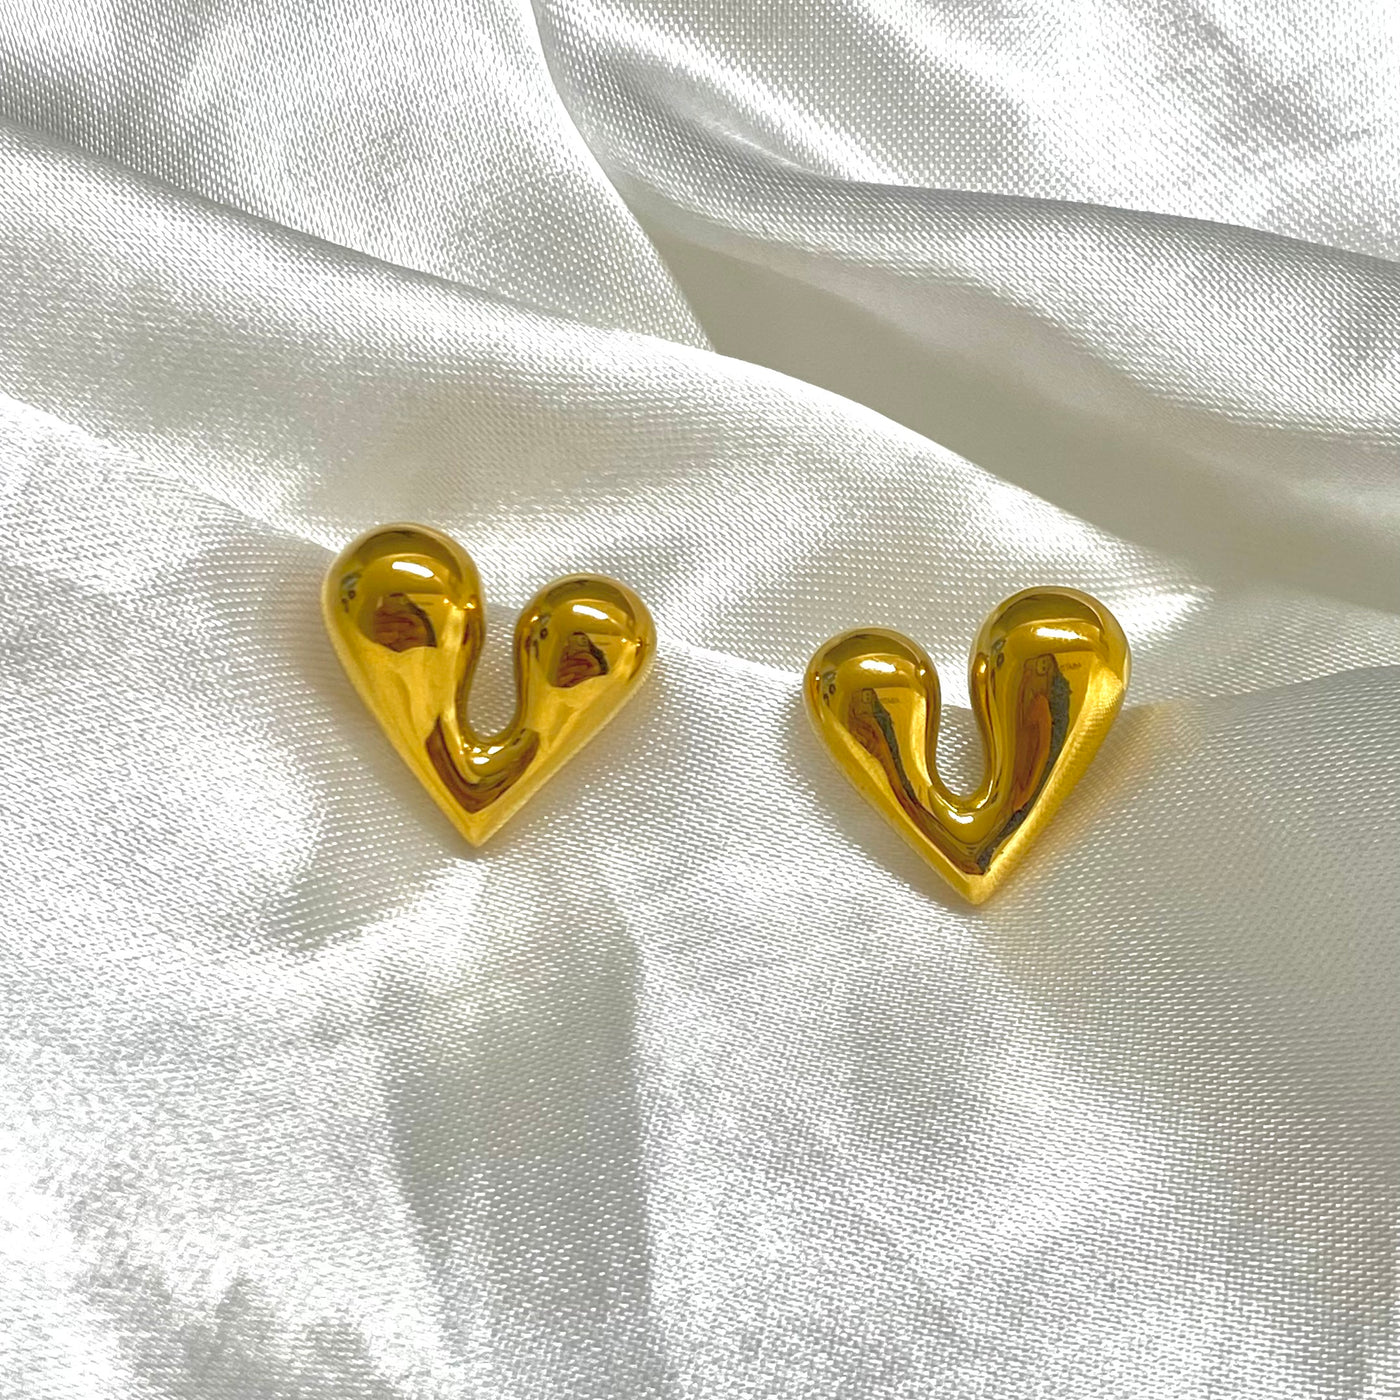 Aretes Lia con forma de corazon mediano de acero inoxidable con baño de oro 18K.